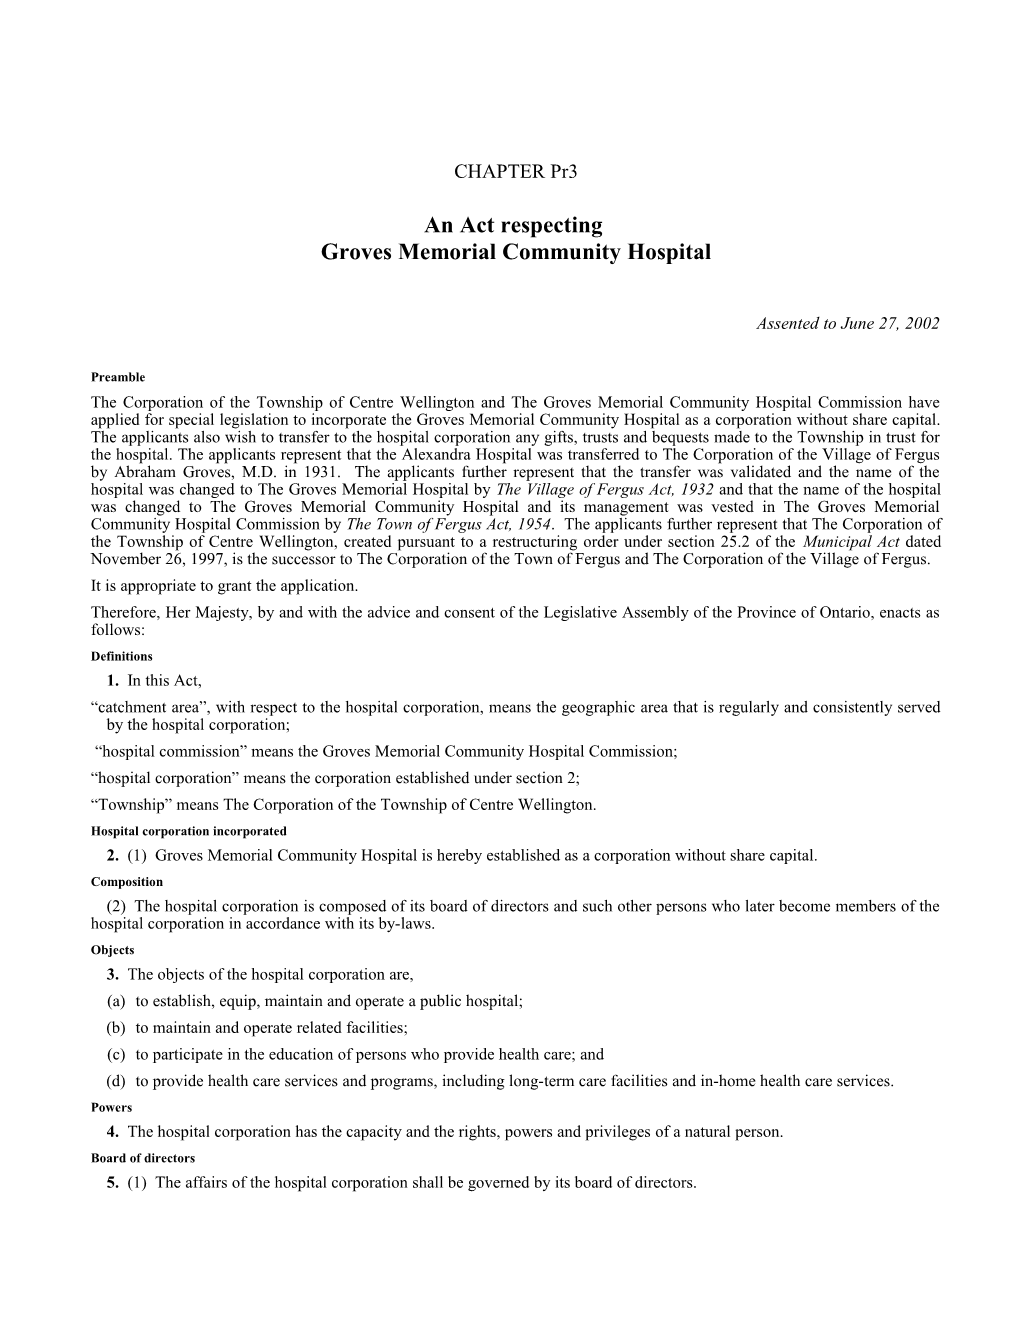 Groves Memorial Community Hospital Act, 2002, S.O. 2002, C. Pr3 - Bill Pr5